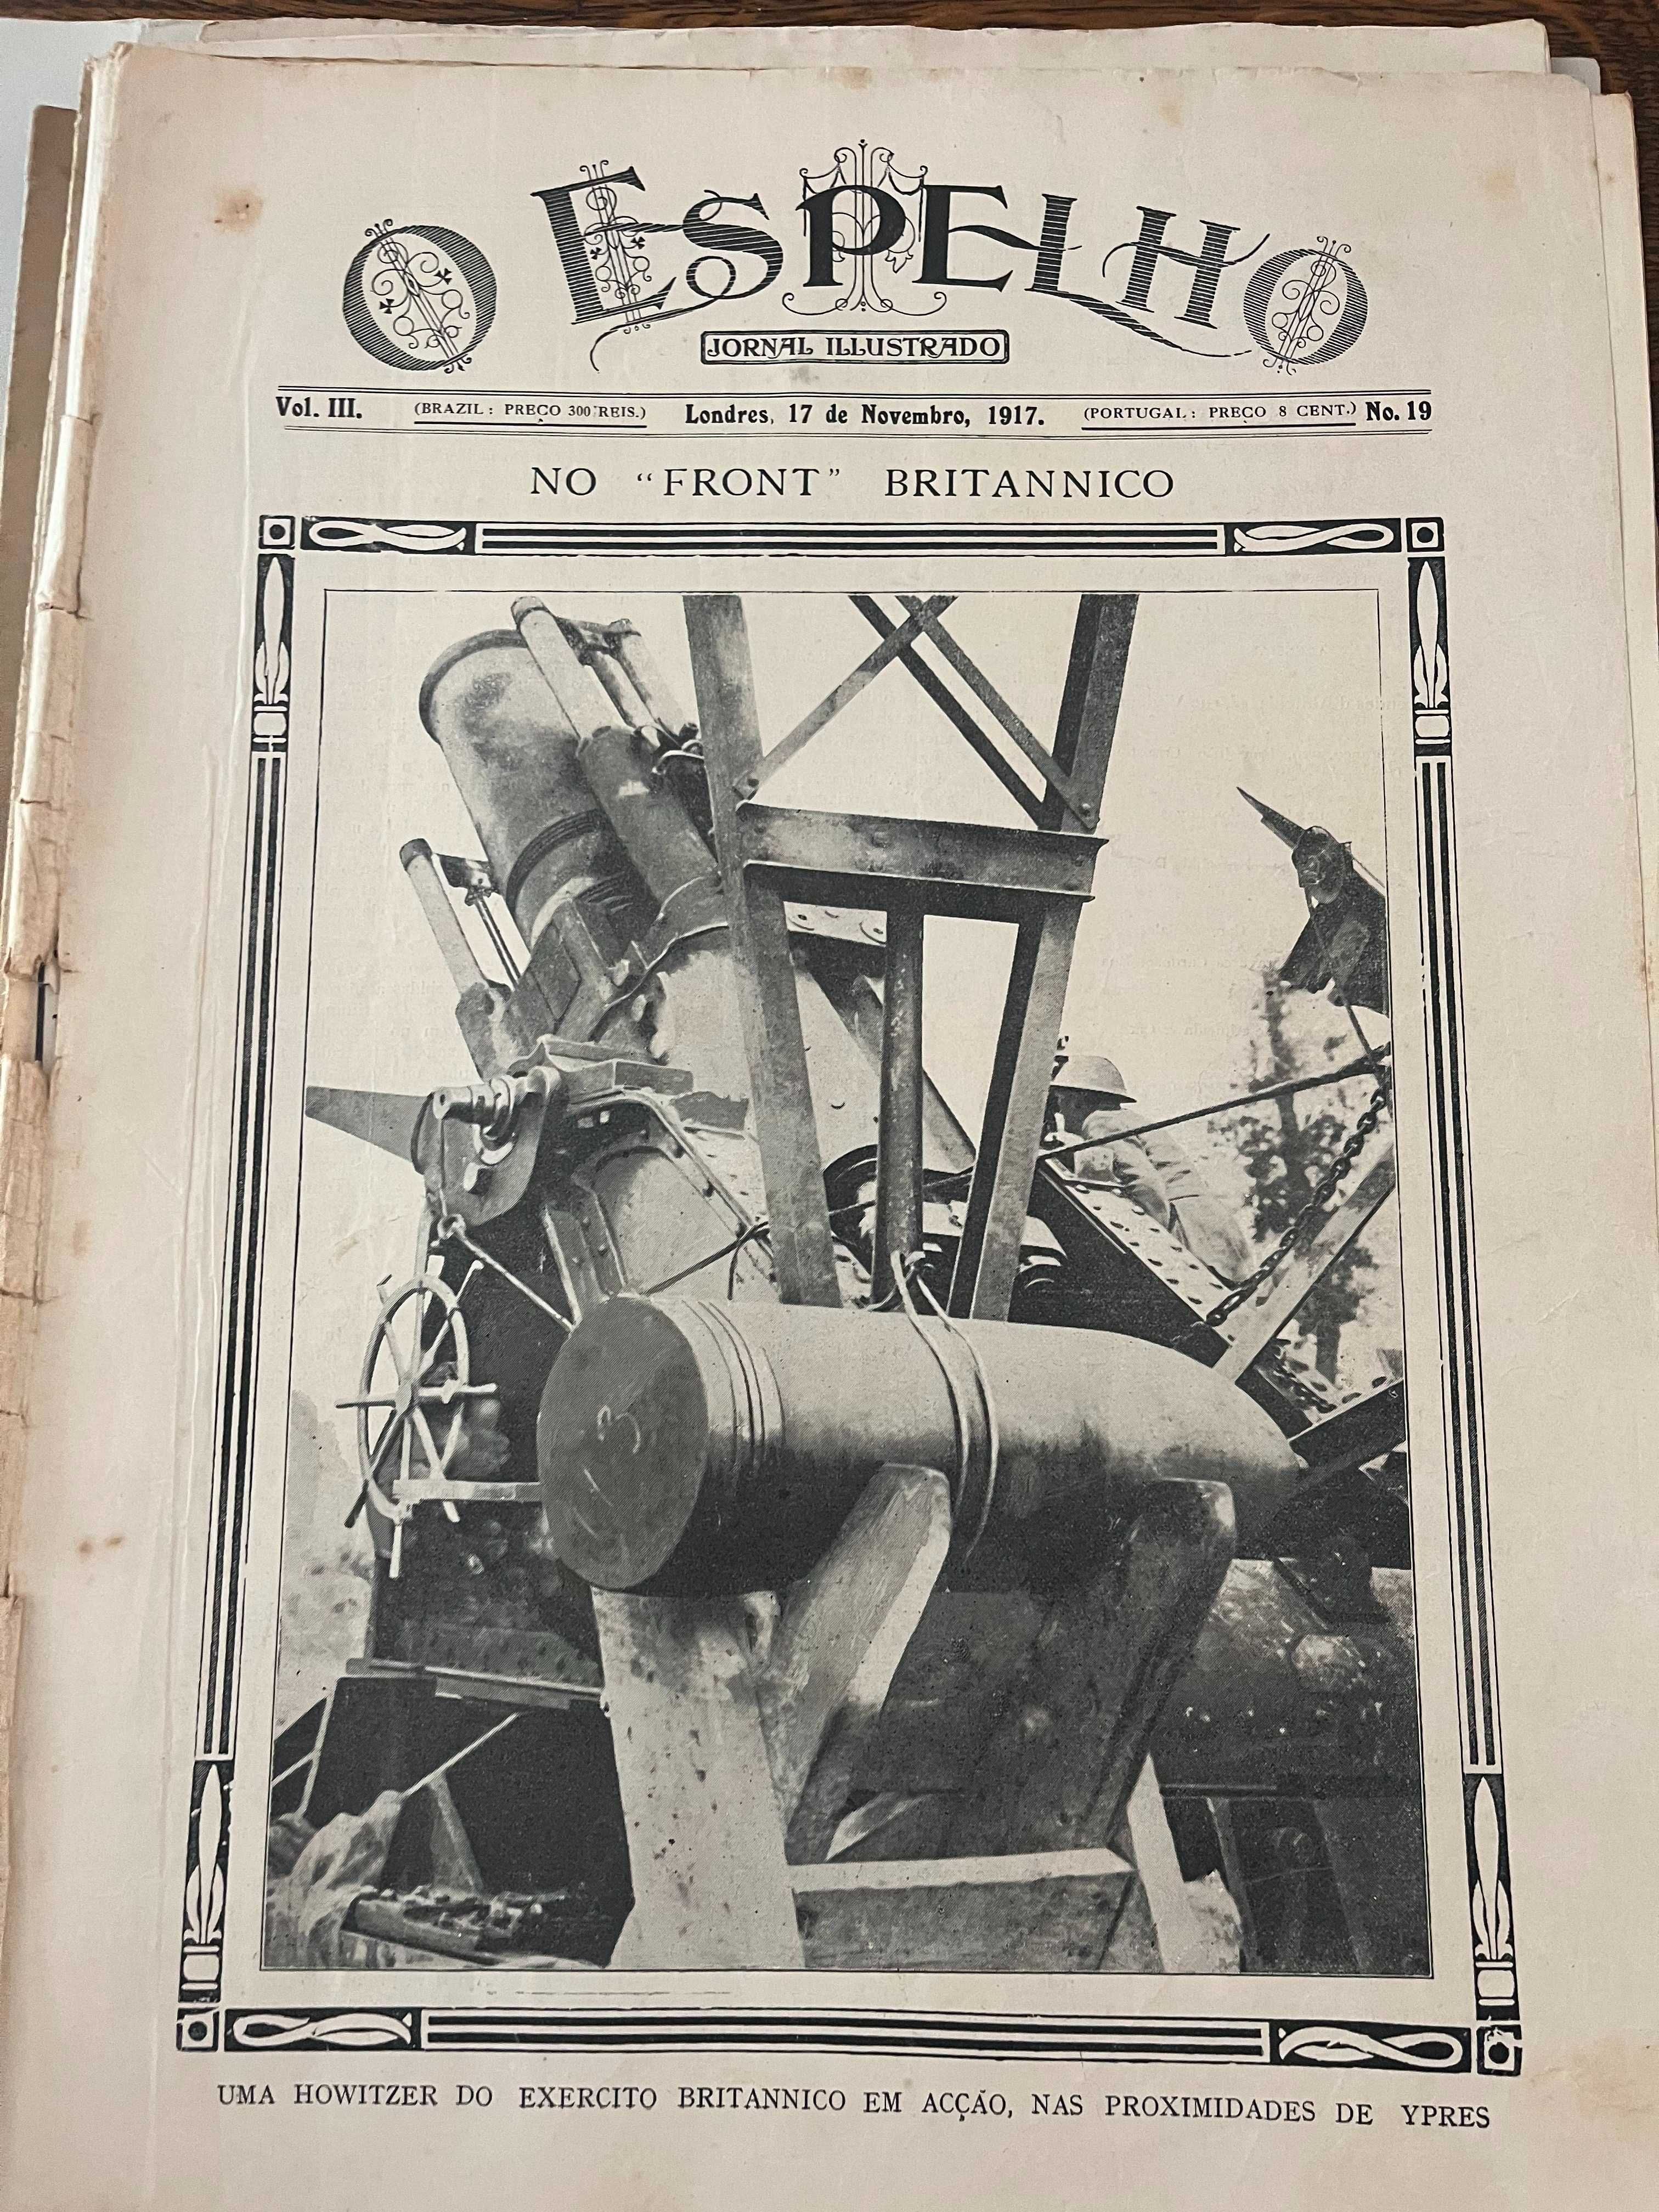 Jornais 1914-18 Históricos Raríssimos - 150€ cada